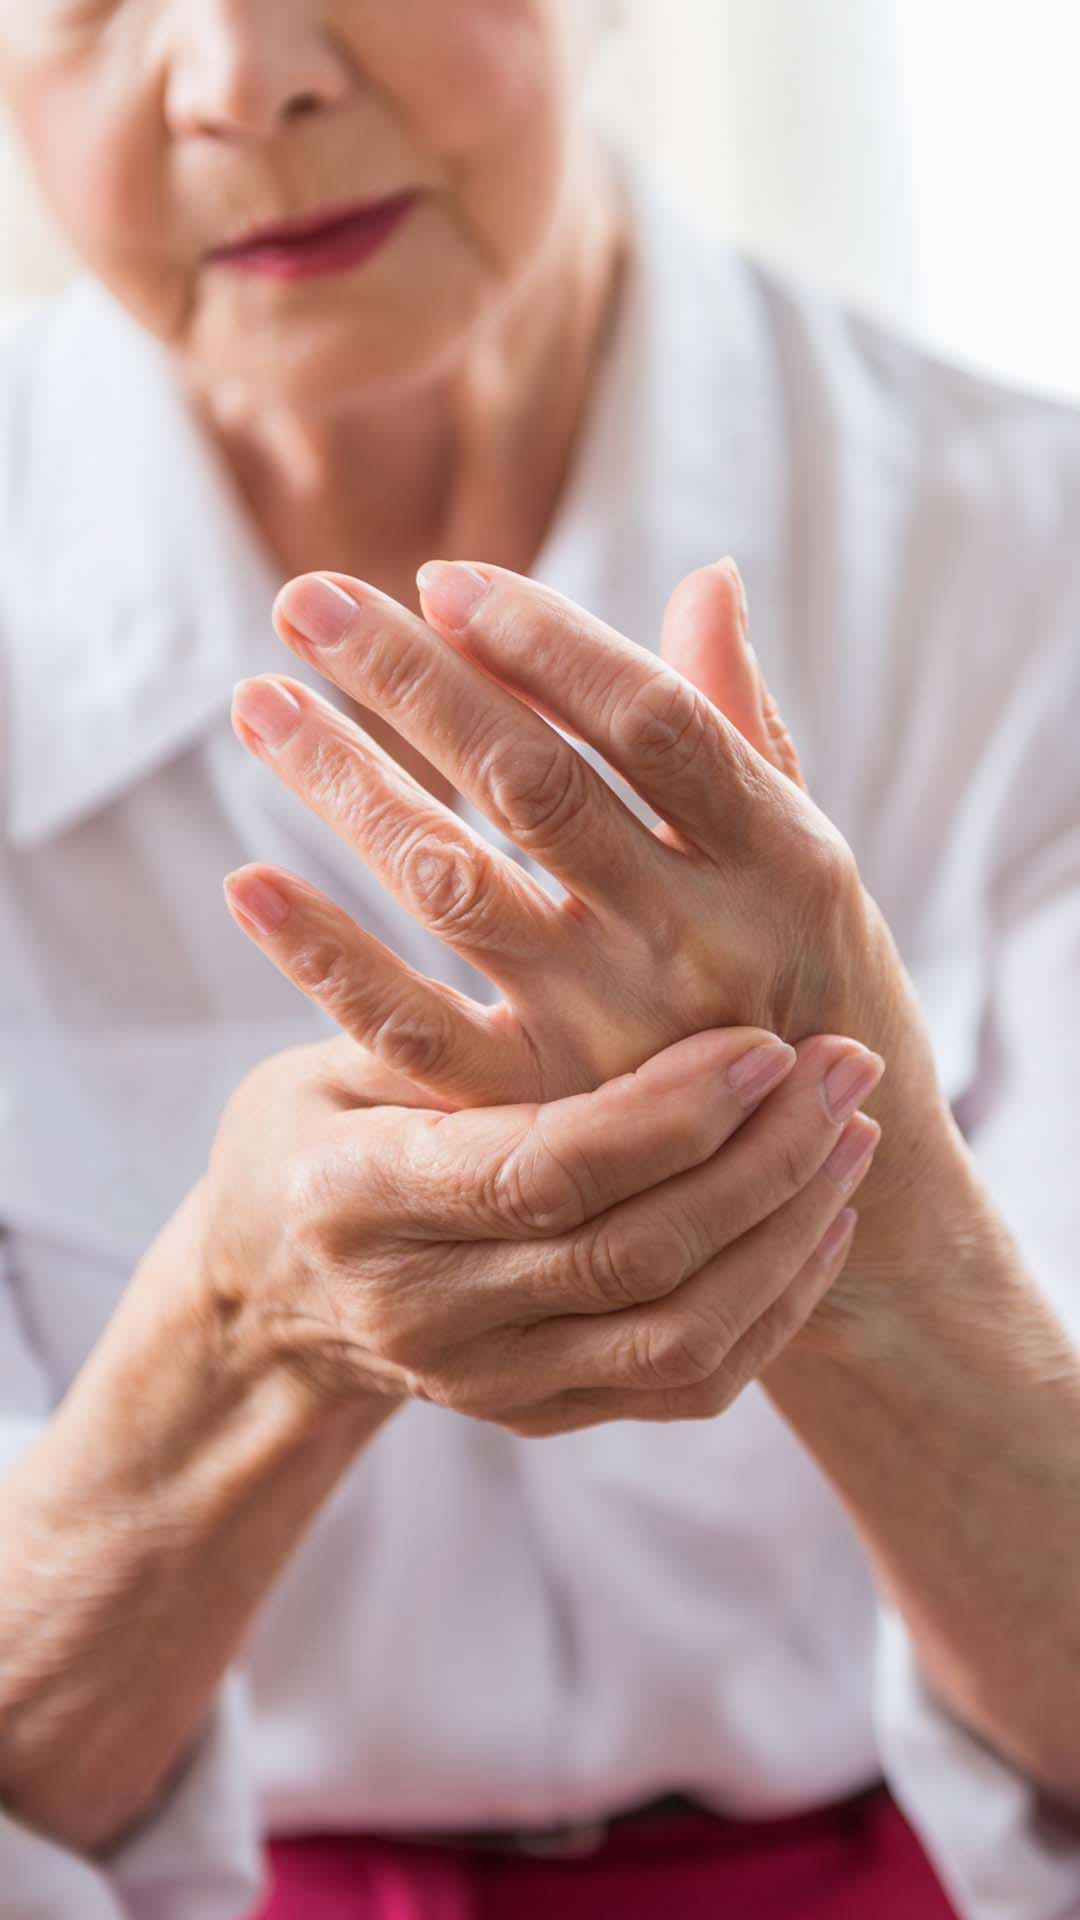 Tratamentul inflamației articulațiilor mâinilor osteocondroza toracică este severă